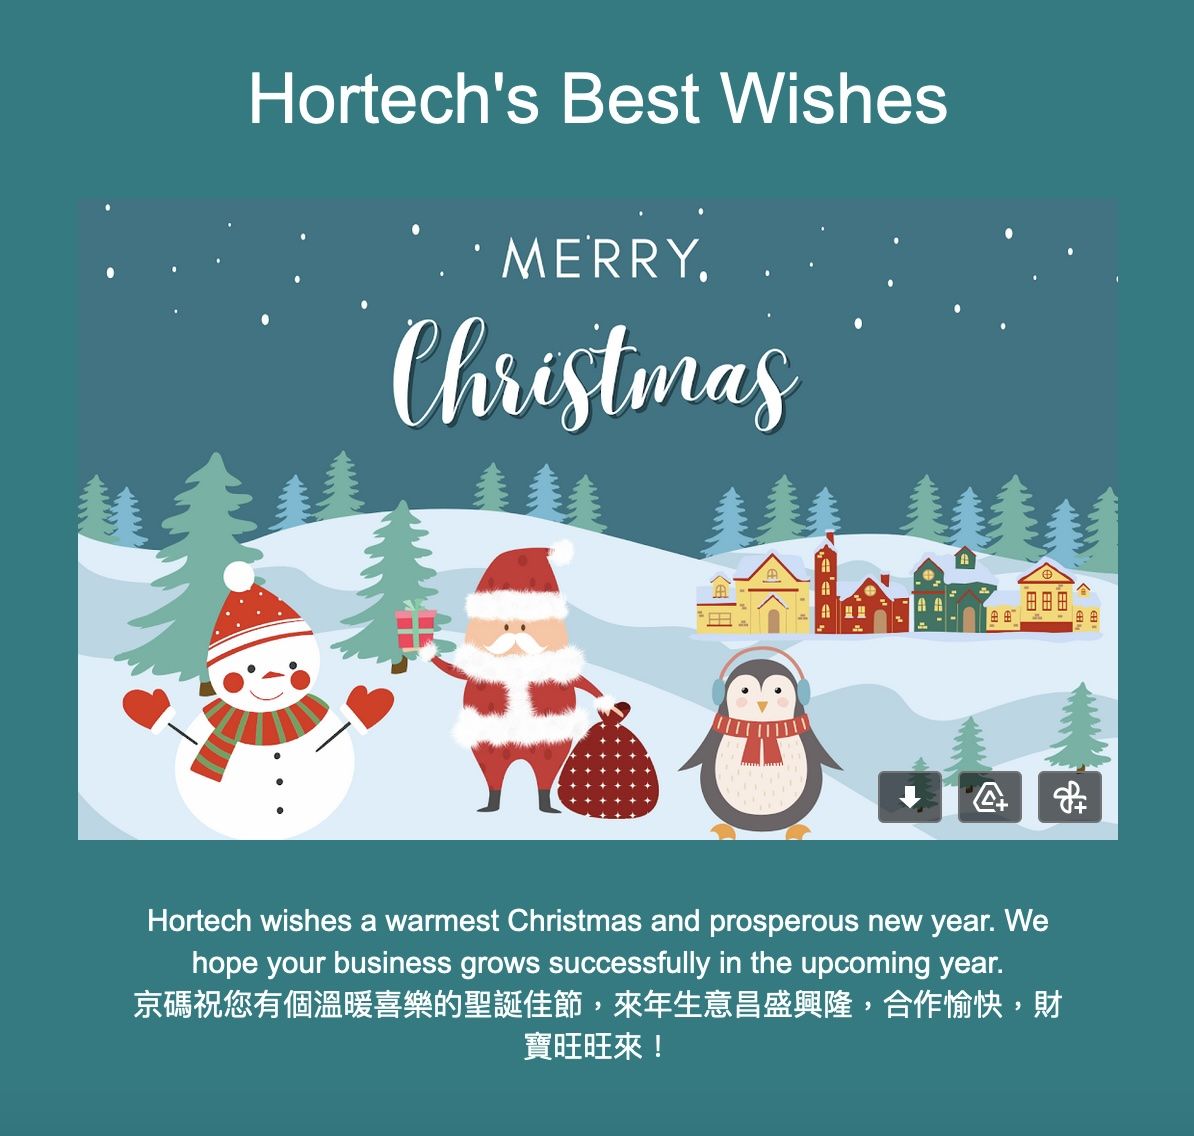 Hortech vous souhaite un joyeux Noël et une heureuse nouvelle année.